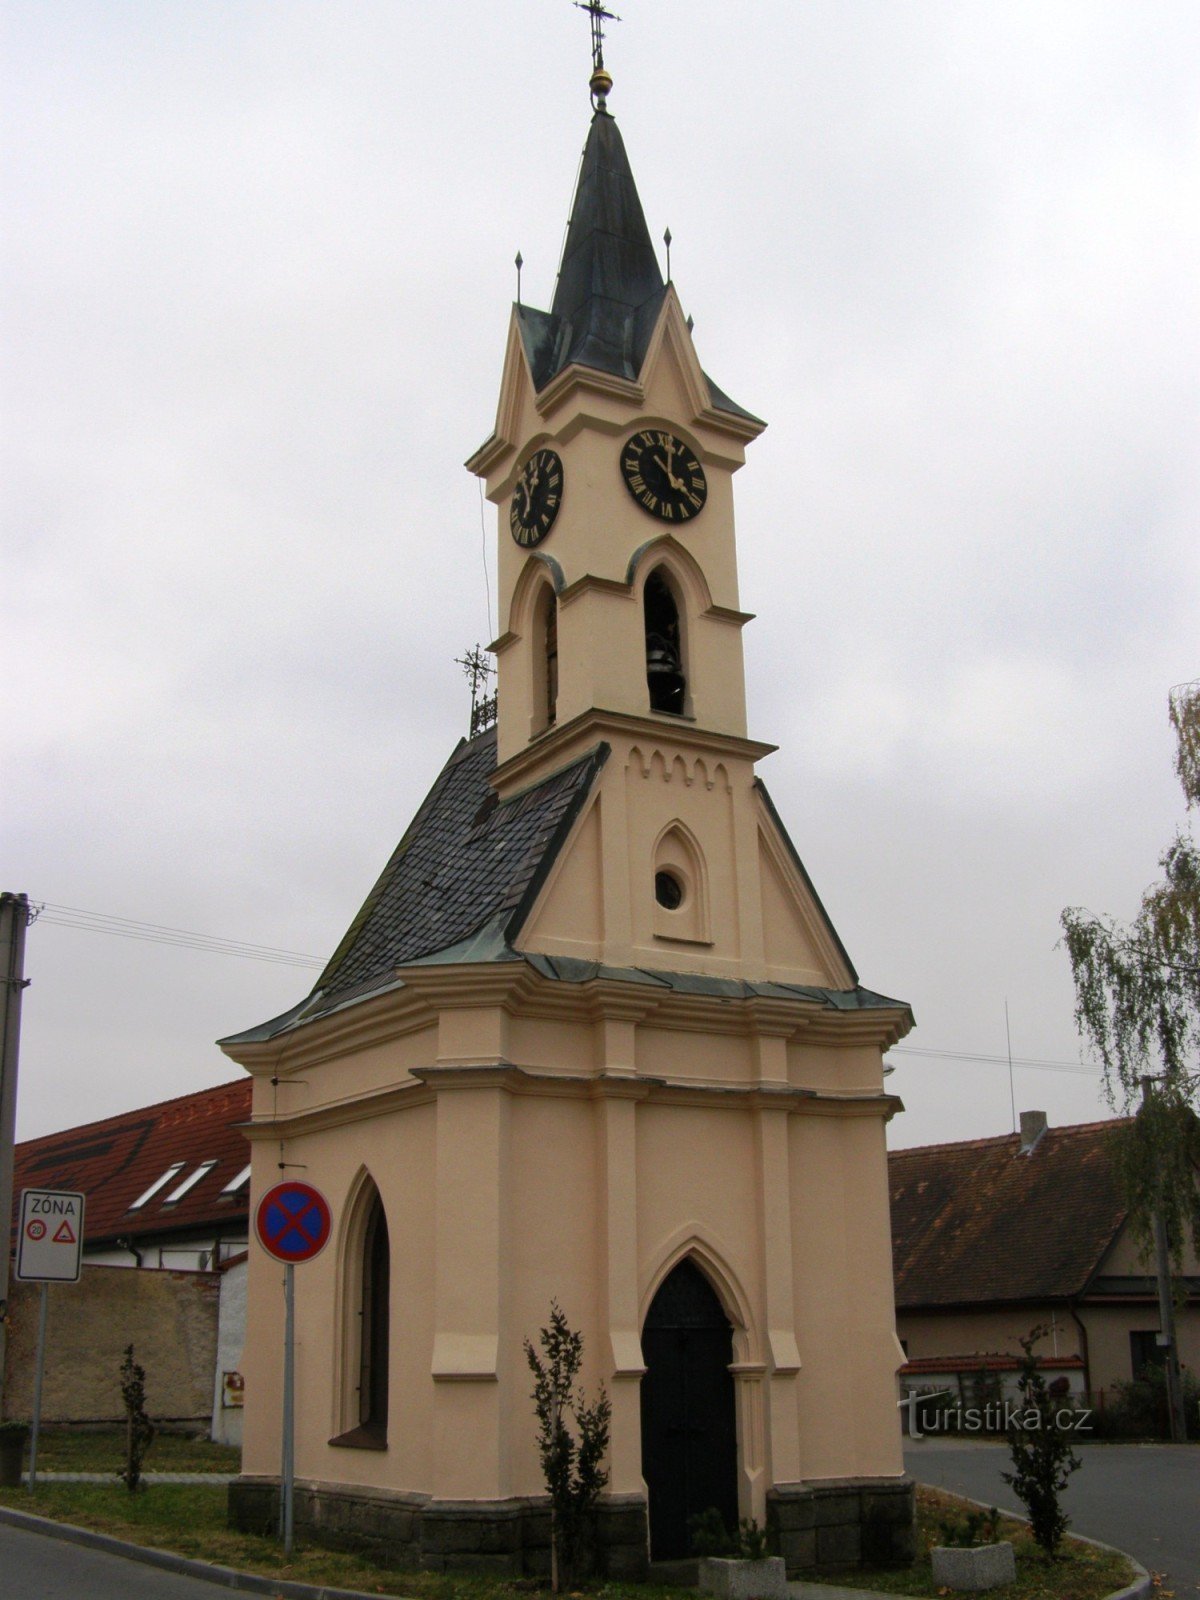 Dražkovice - Az őrangyalok kápolnája